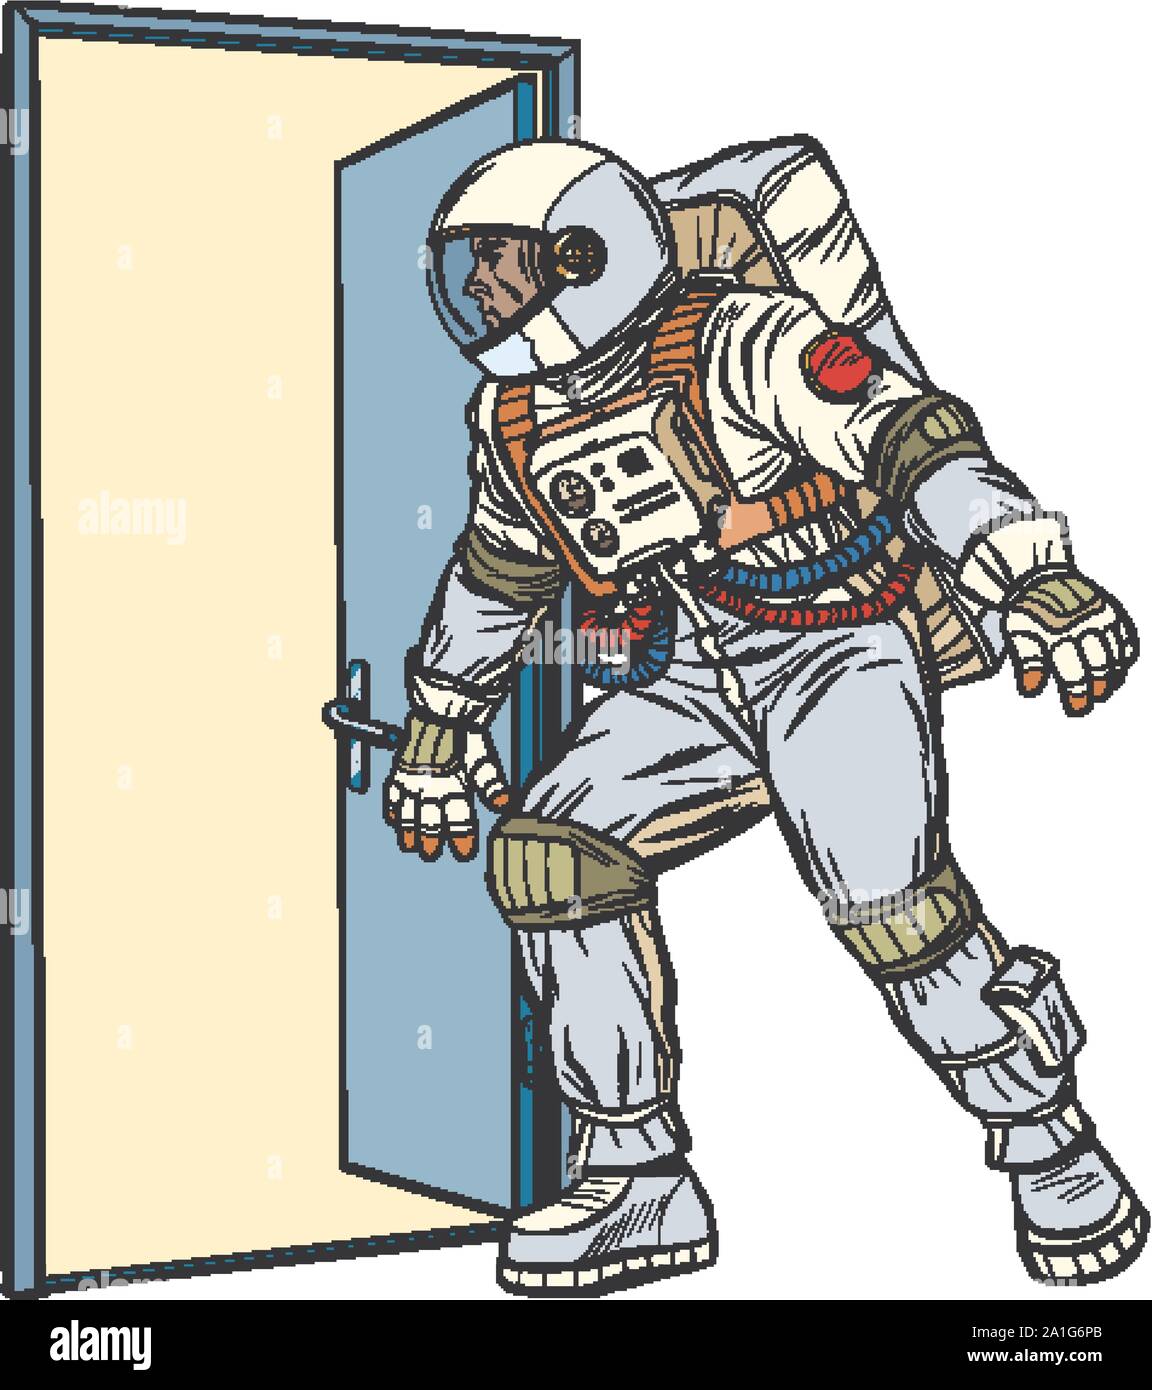 Astronaut öffnet die Tür zum Unbekannten. Pop Art retro Vektor stock Illustration Zeichnung Stock Vektor